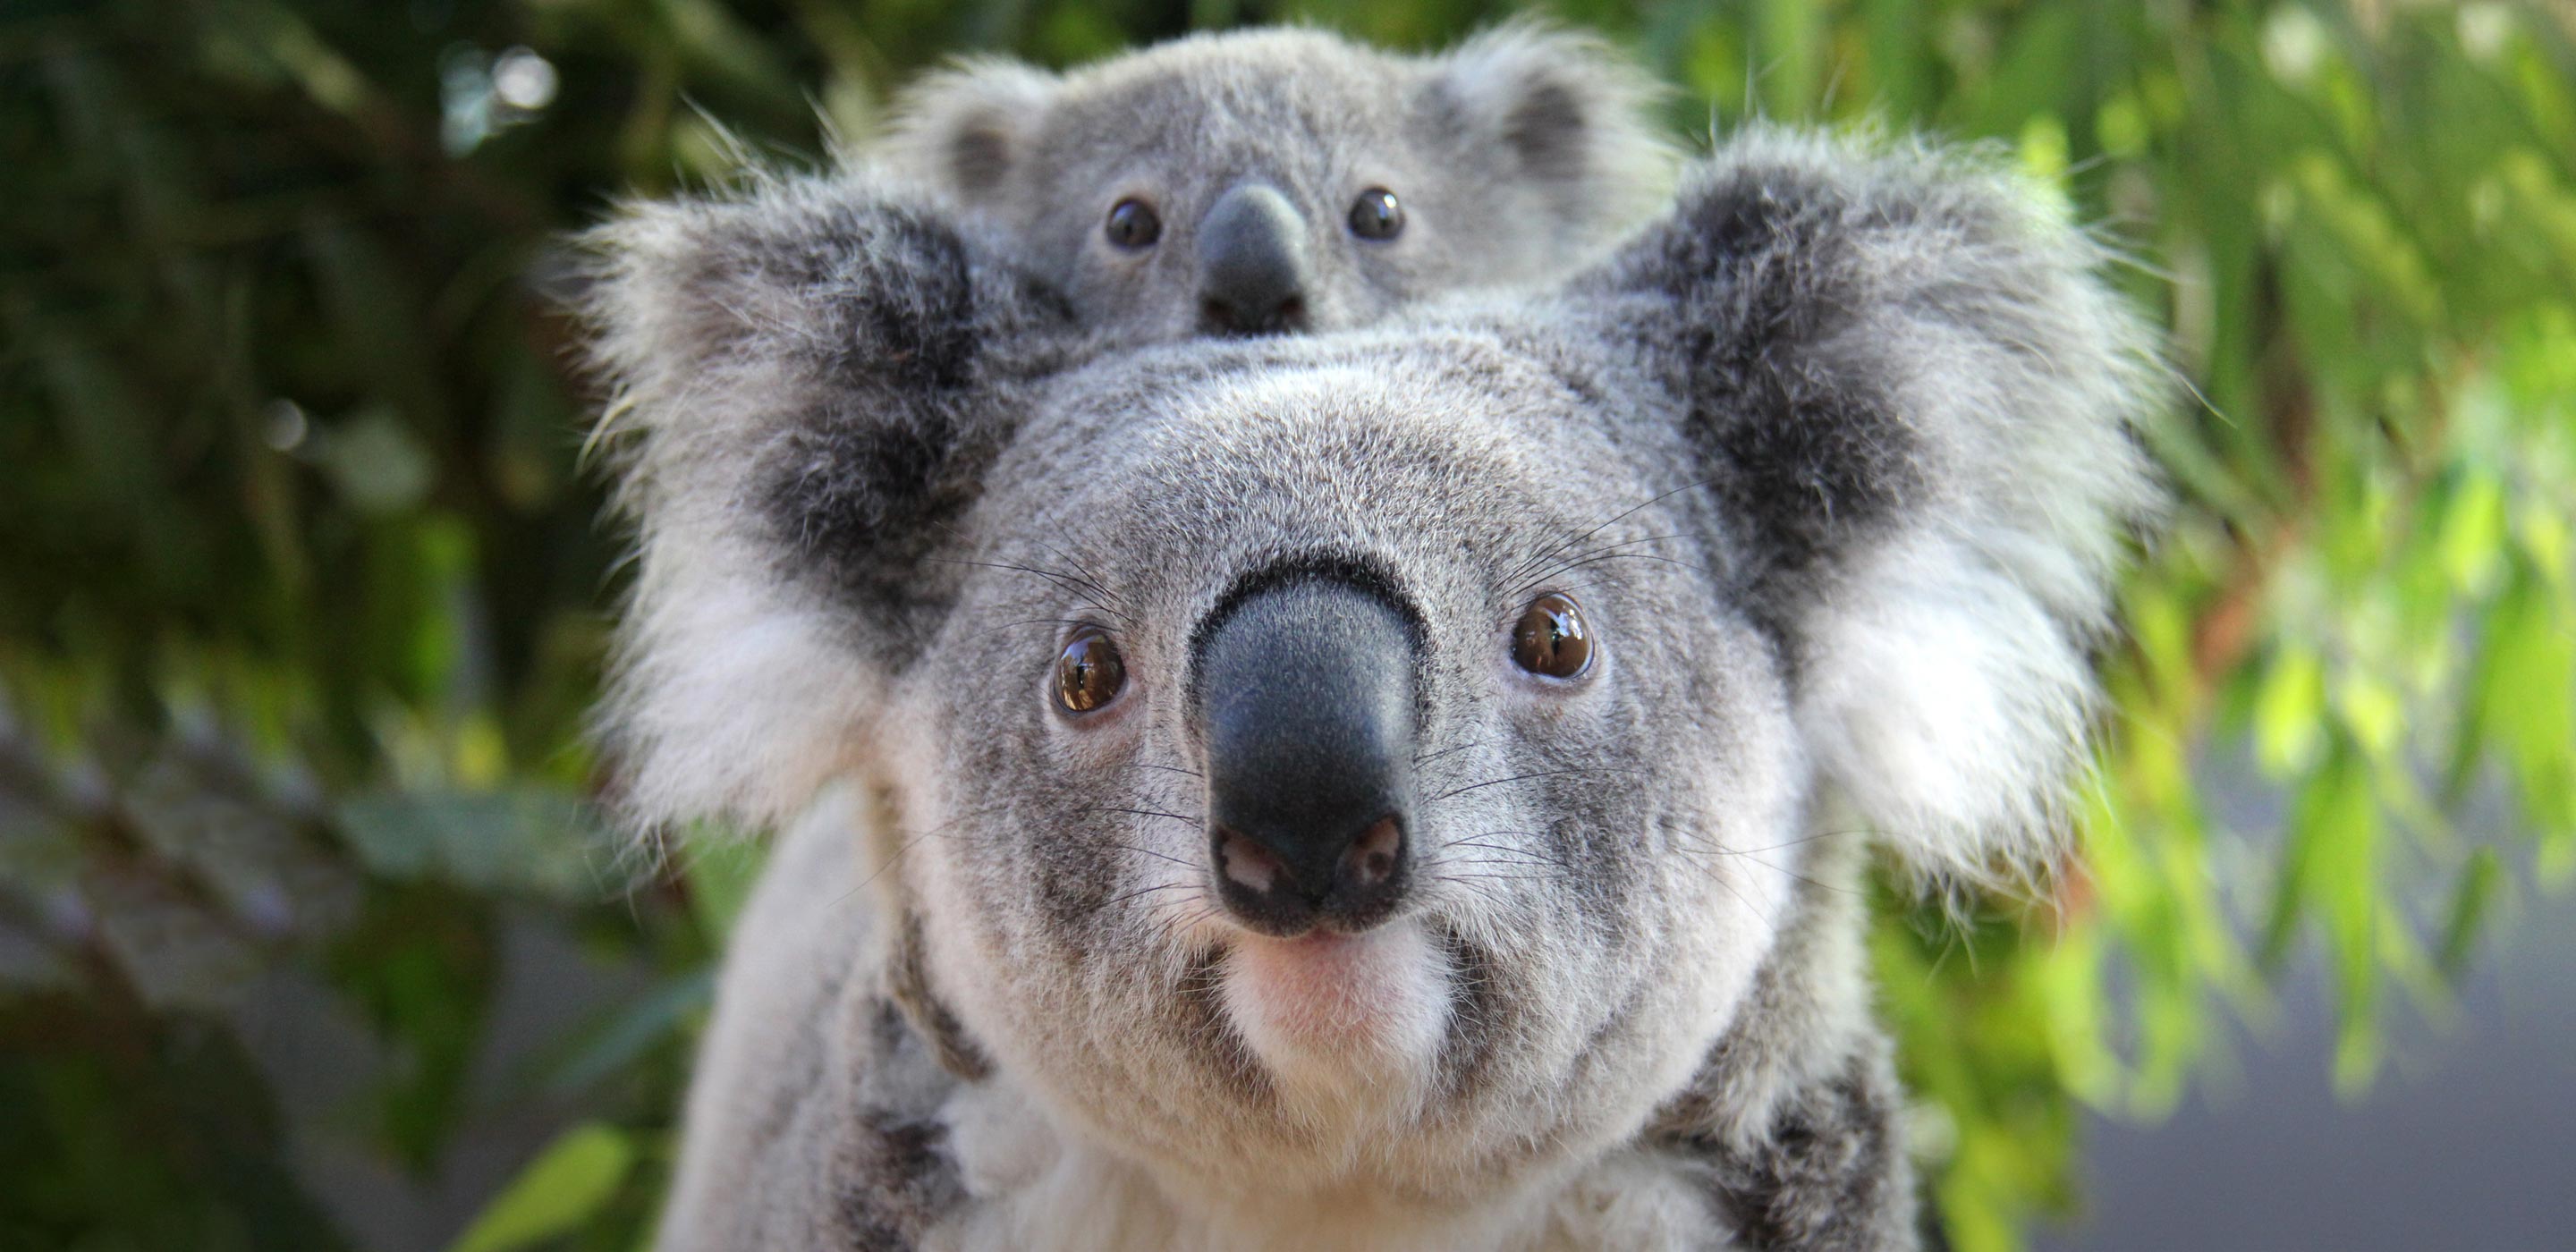 Koala Encounter | Taronga Conservation Society Australia